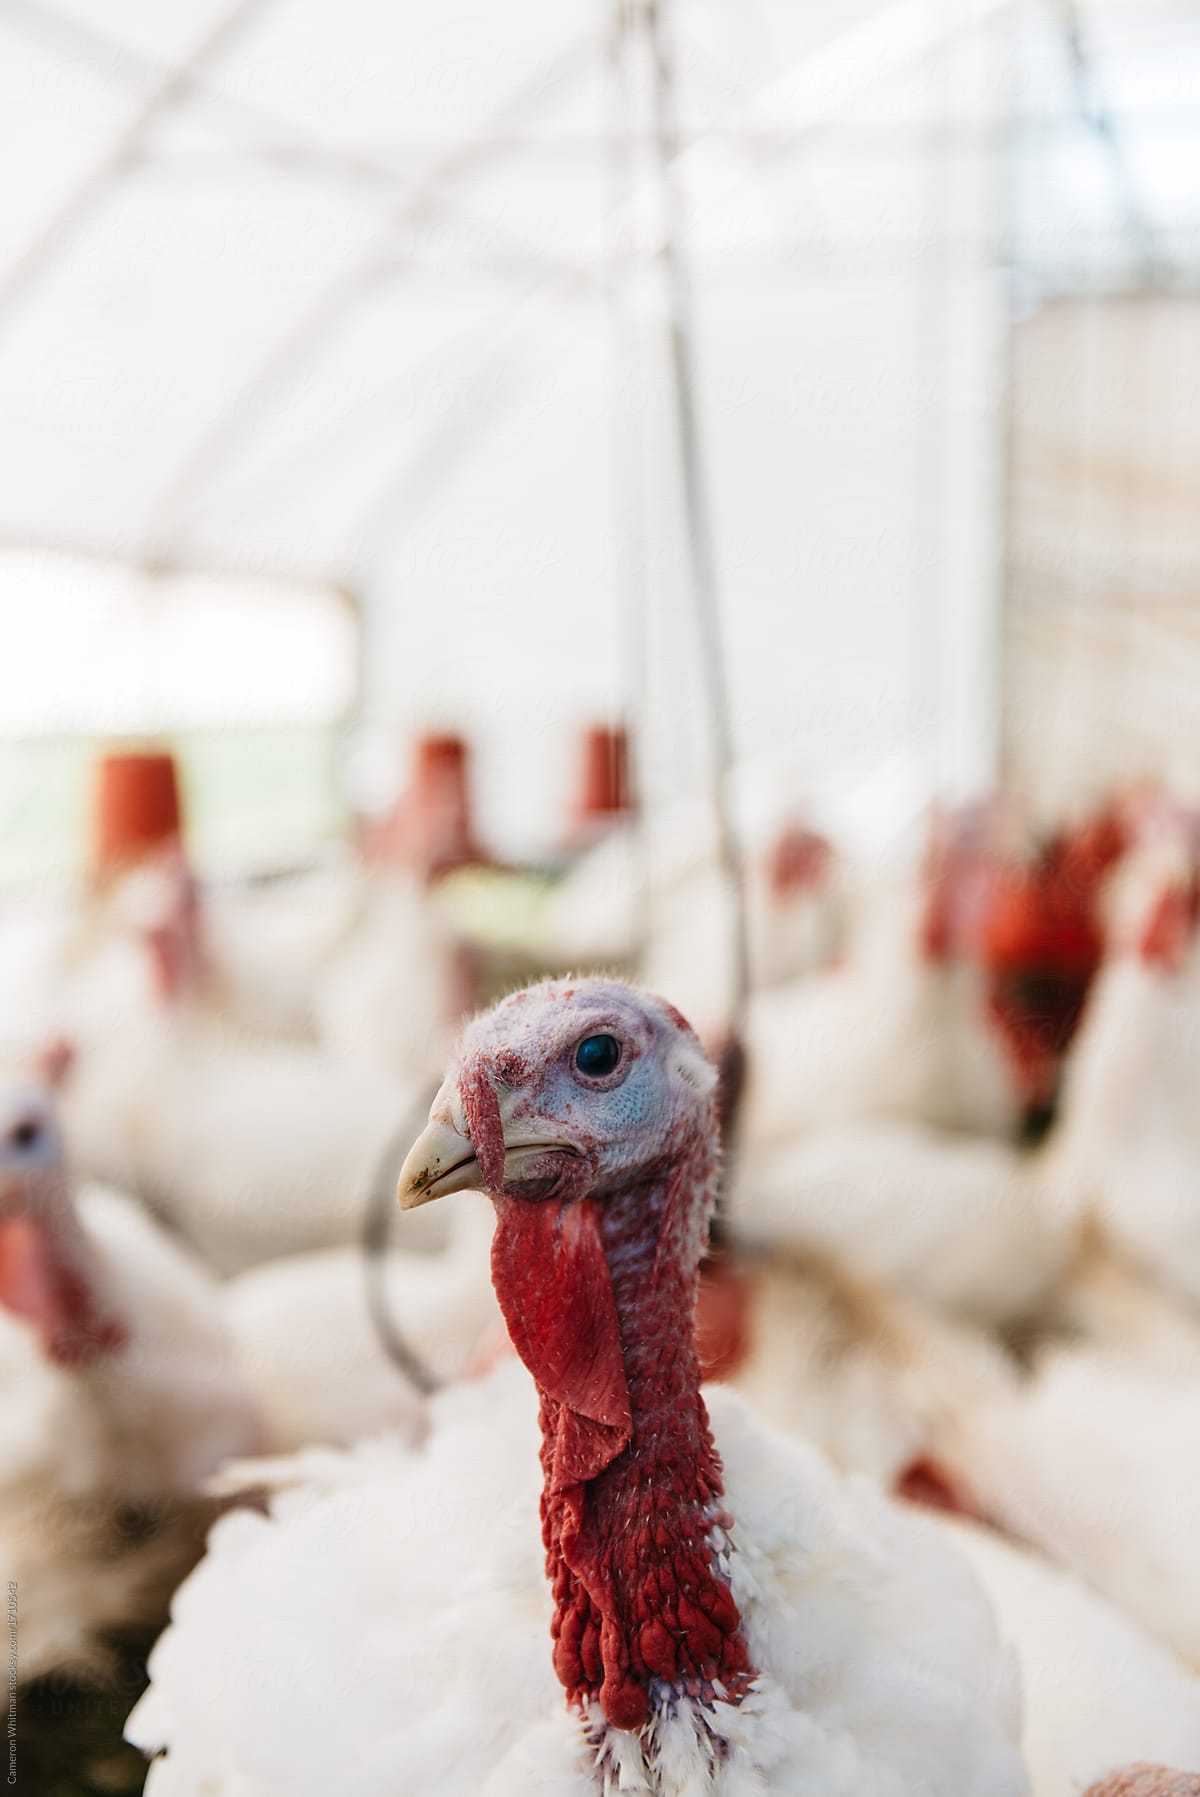 Thanksgiving Turkey's in their coop